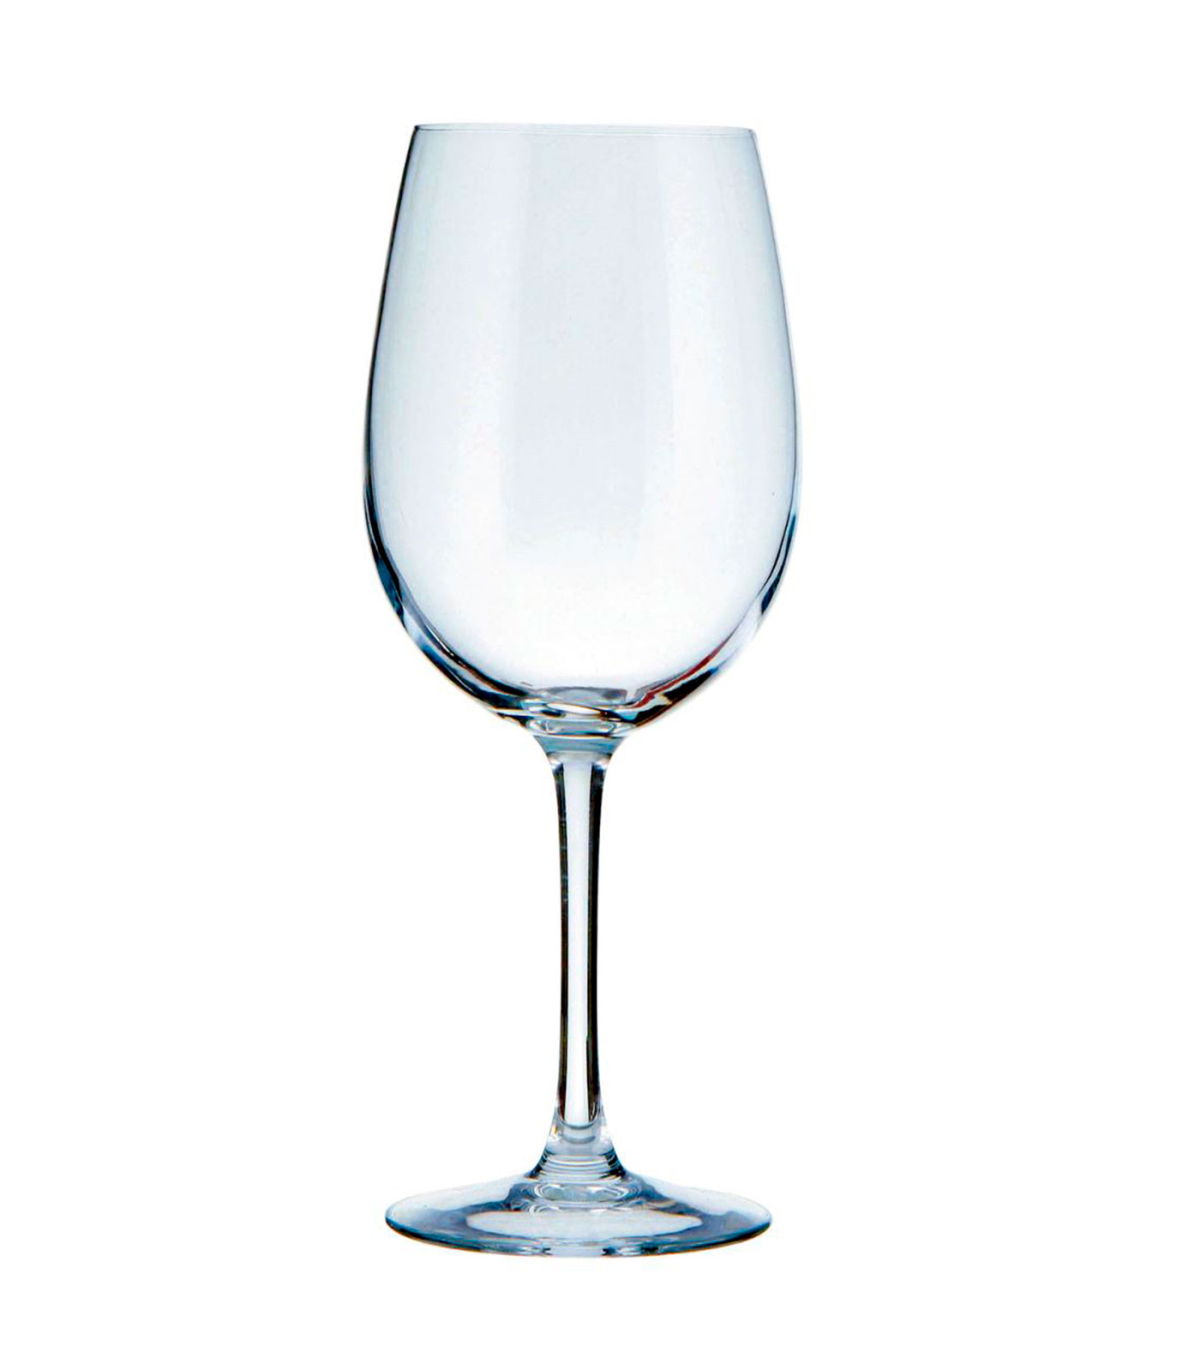 Tradineur - Set de 6 copas de vino, cristal liso, modelo La Cave, diseño  clásico, sofisticado y elegante, aptas para lavavajilla